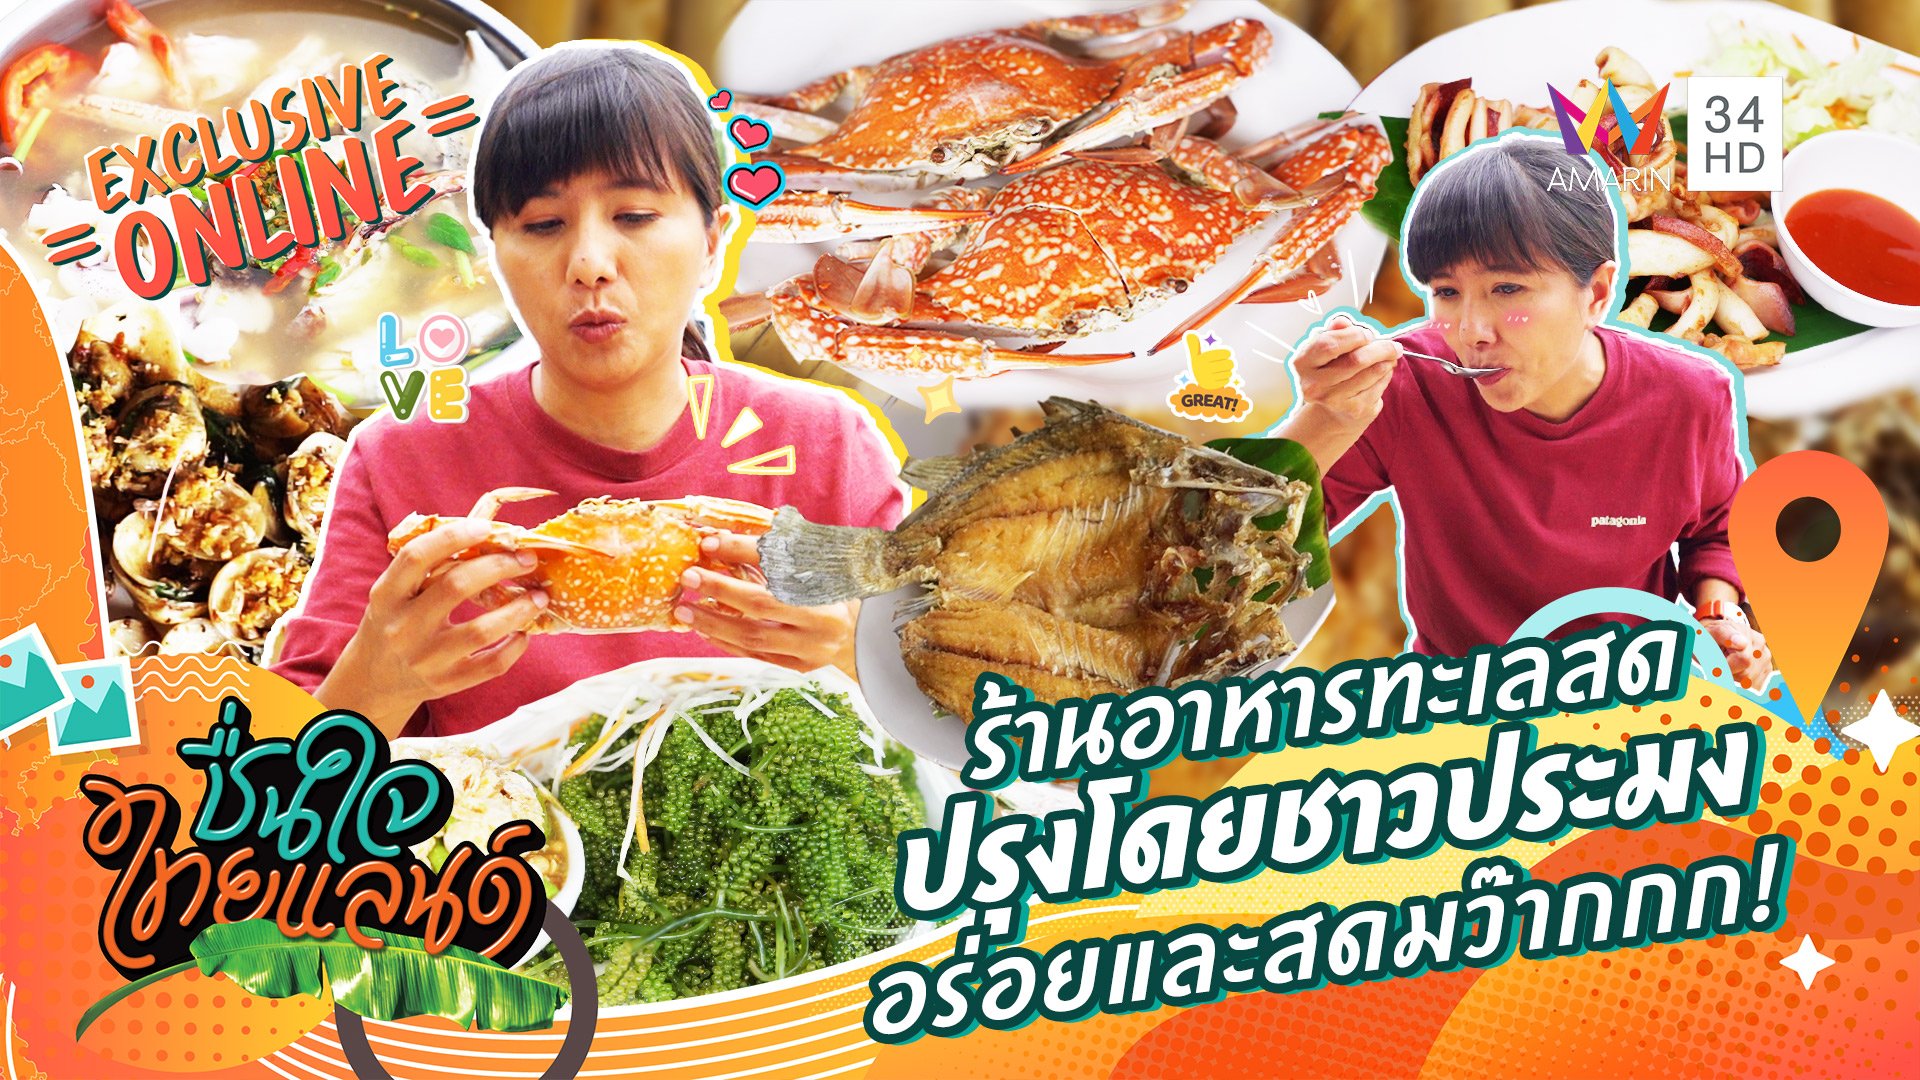 เที่ยวเกาะลับ กินกุ้งตัวใหญ่มากกกก @พัทลุง | ชื่นใจไทยแลนด์ | 12 ต.ค. 65 |  AMARIN TVHD34